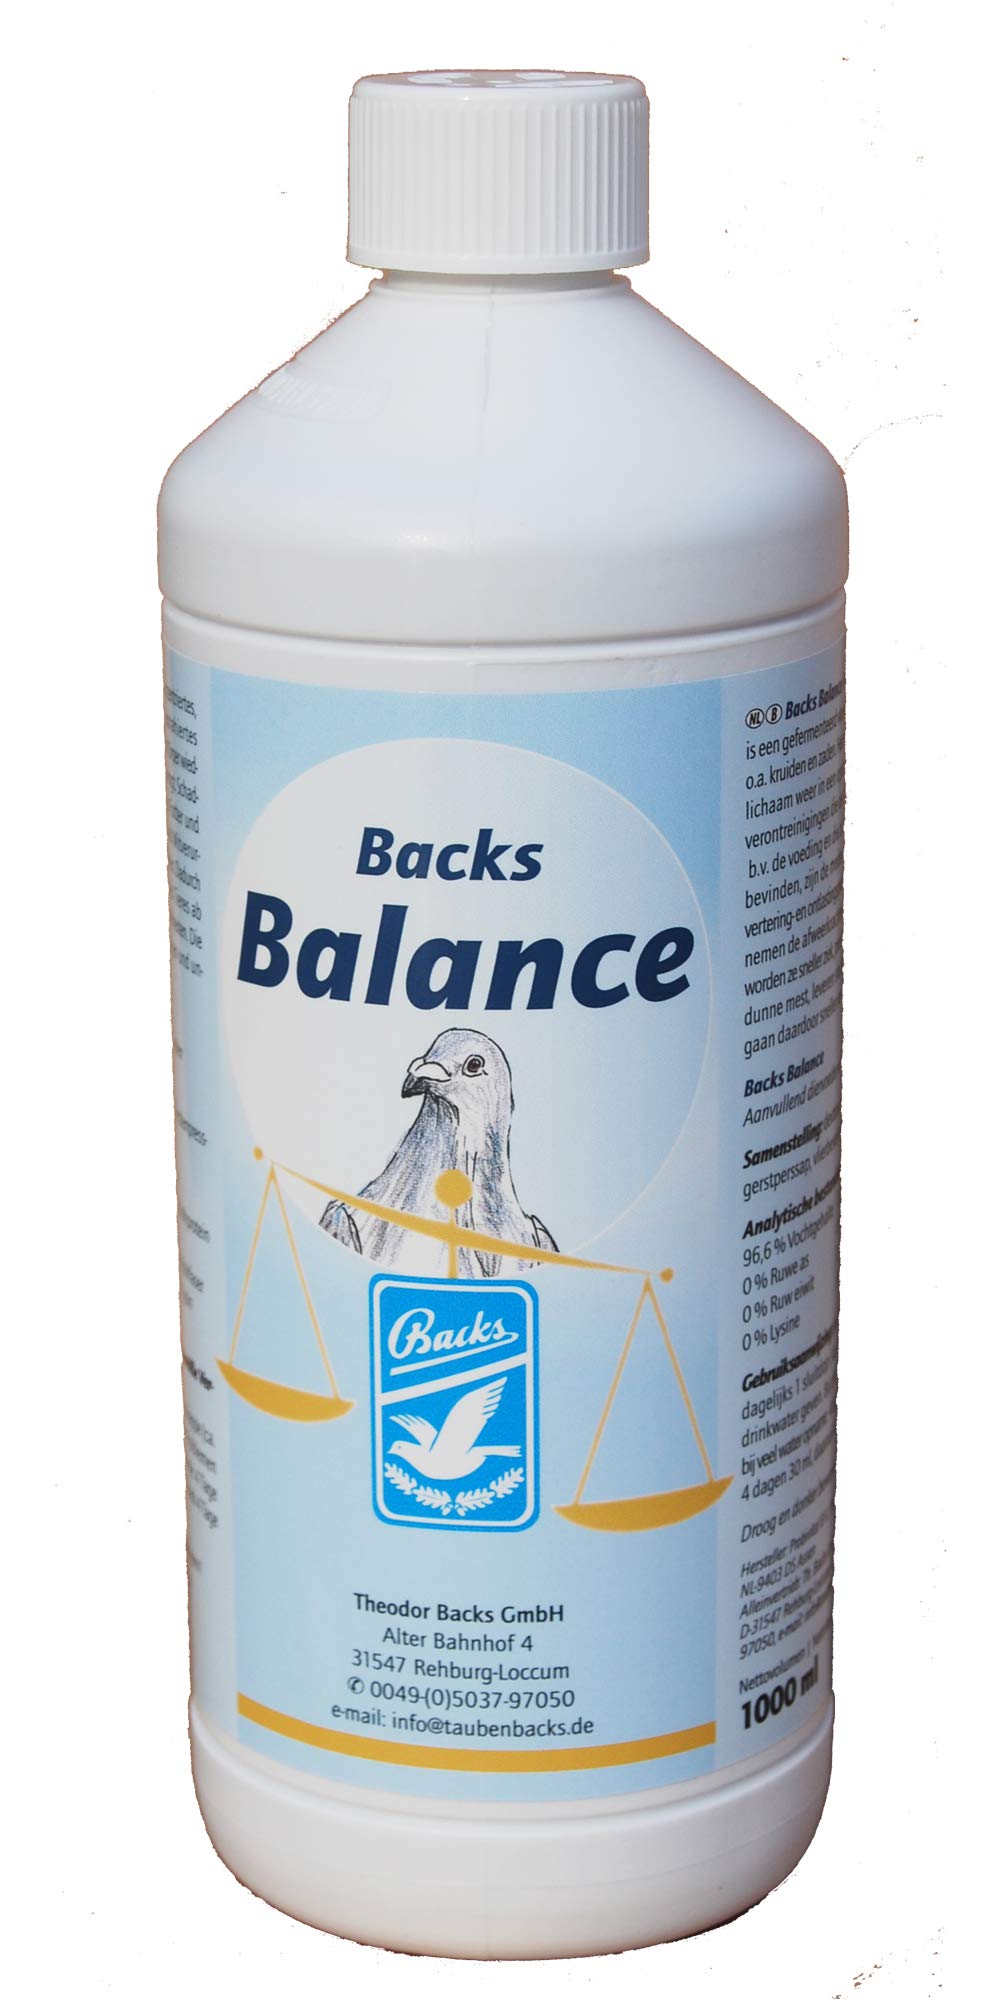 Backs Balance 1000 ml - Kräuter und Saaten für eine optimale Balance